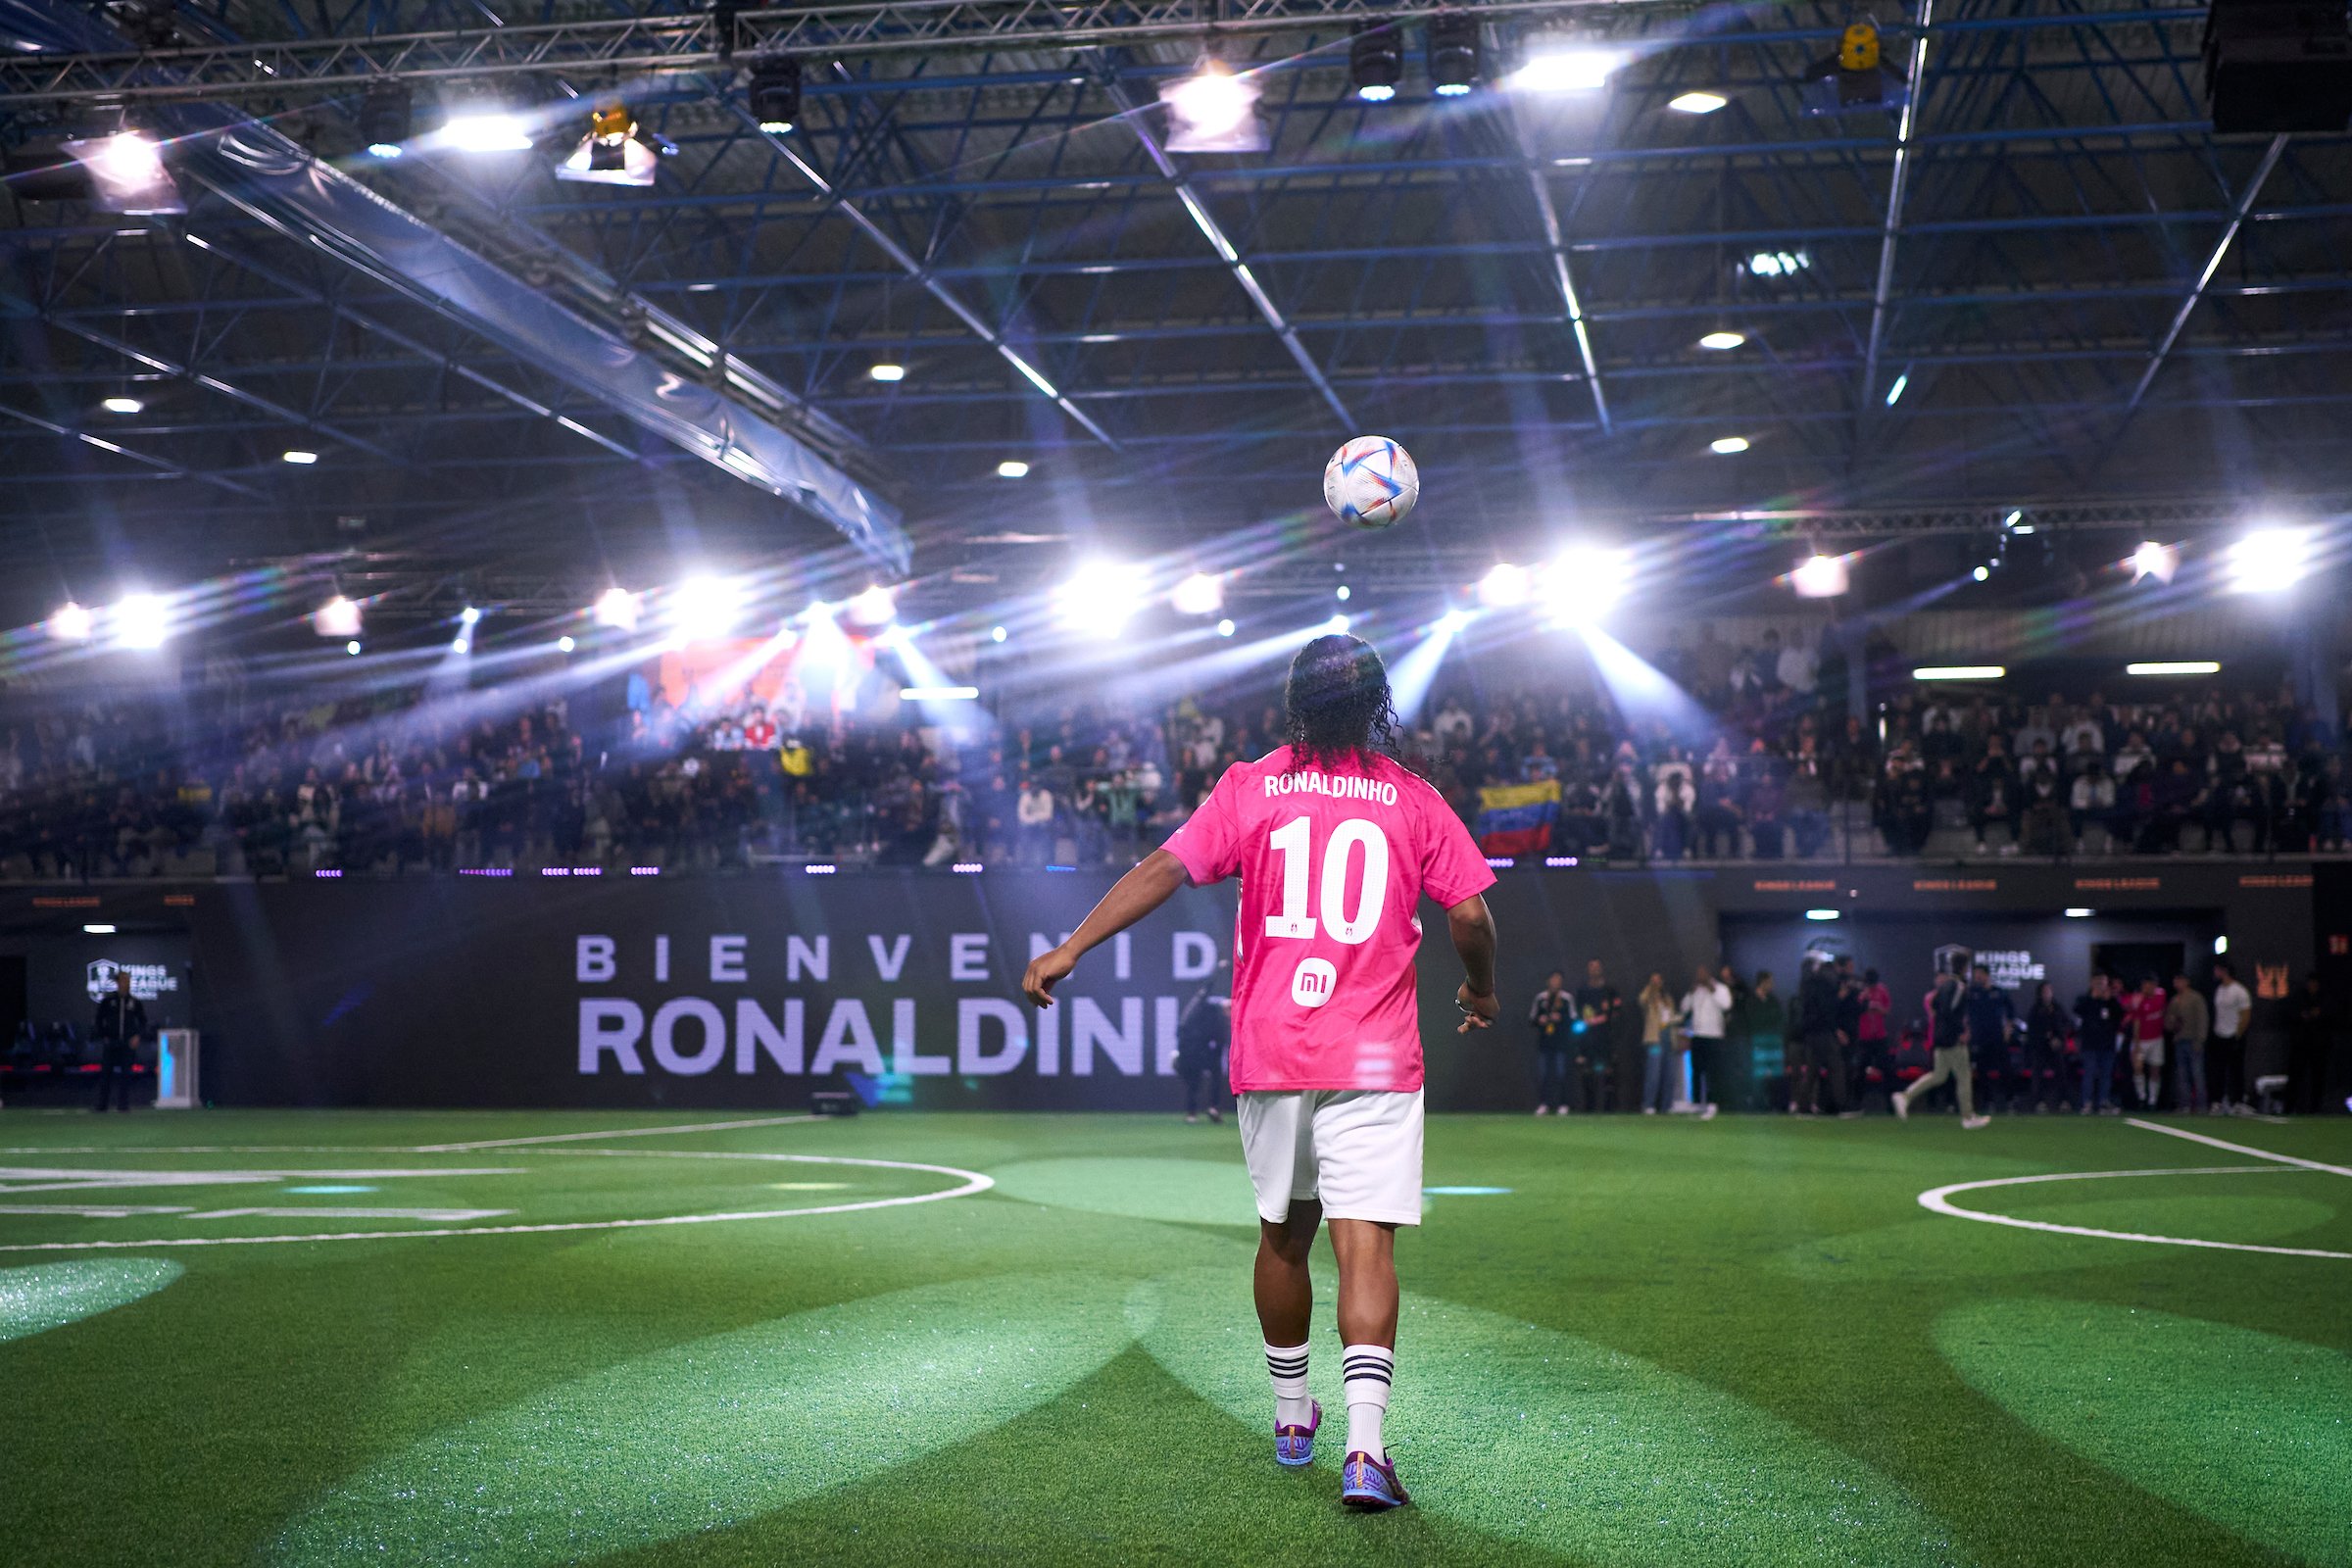 Audiencias disparadas en la Kings League: inimaginable debut de Ronaldinho